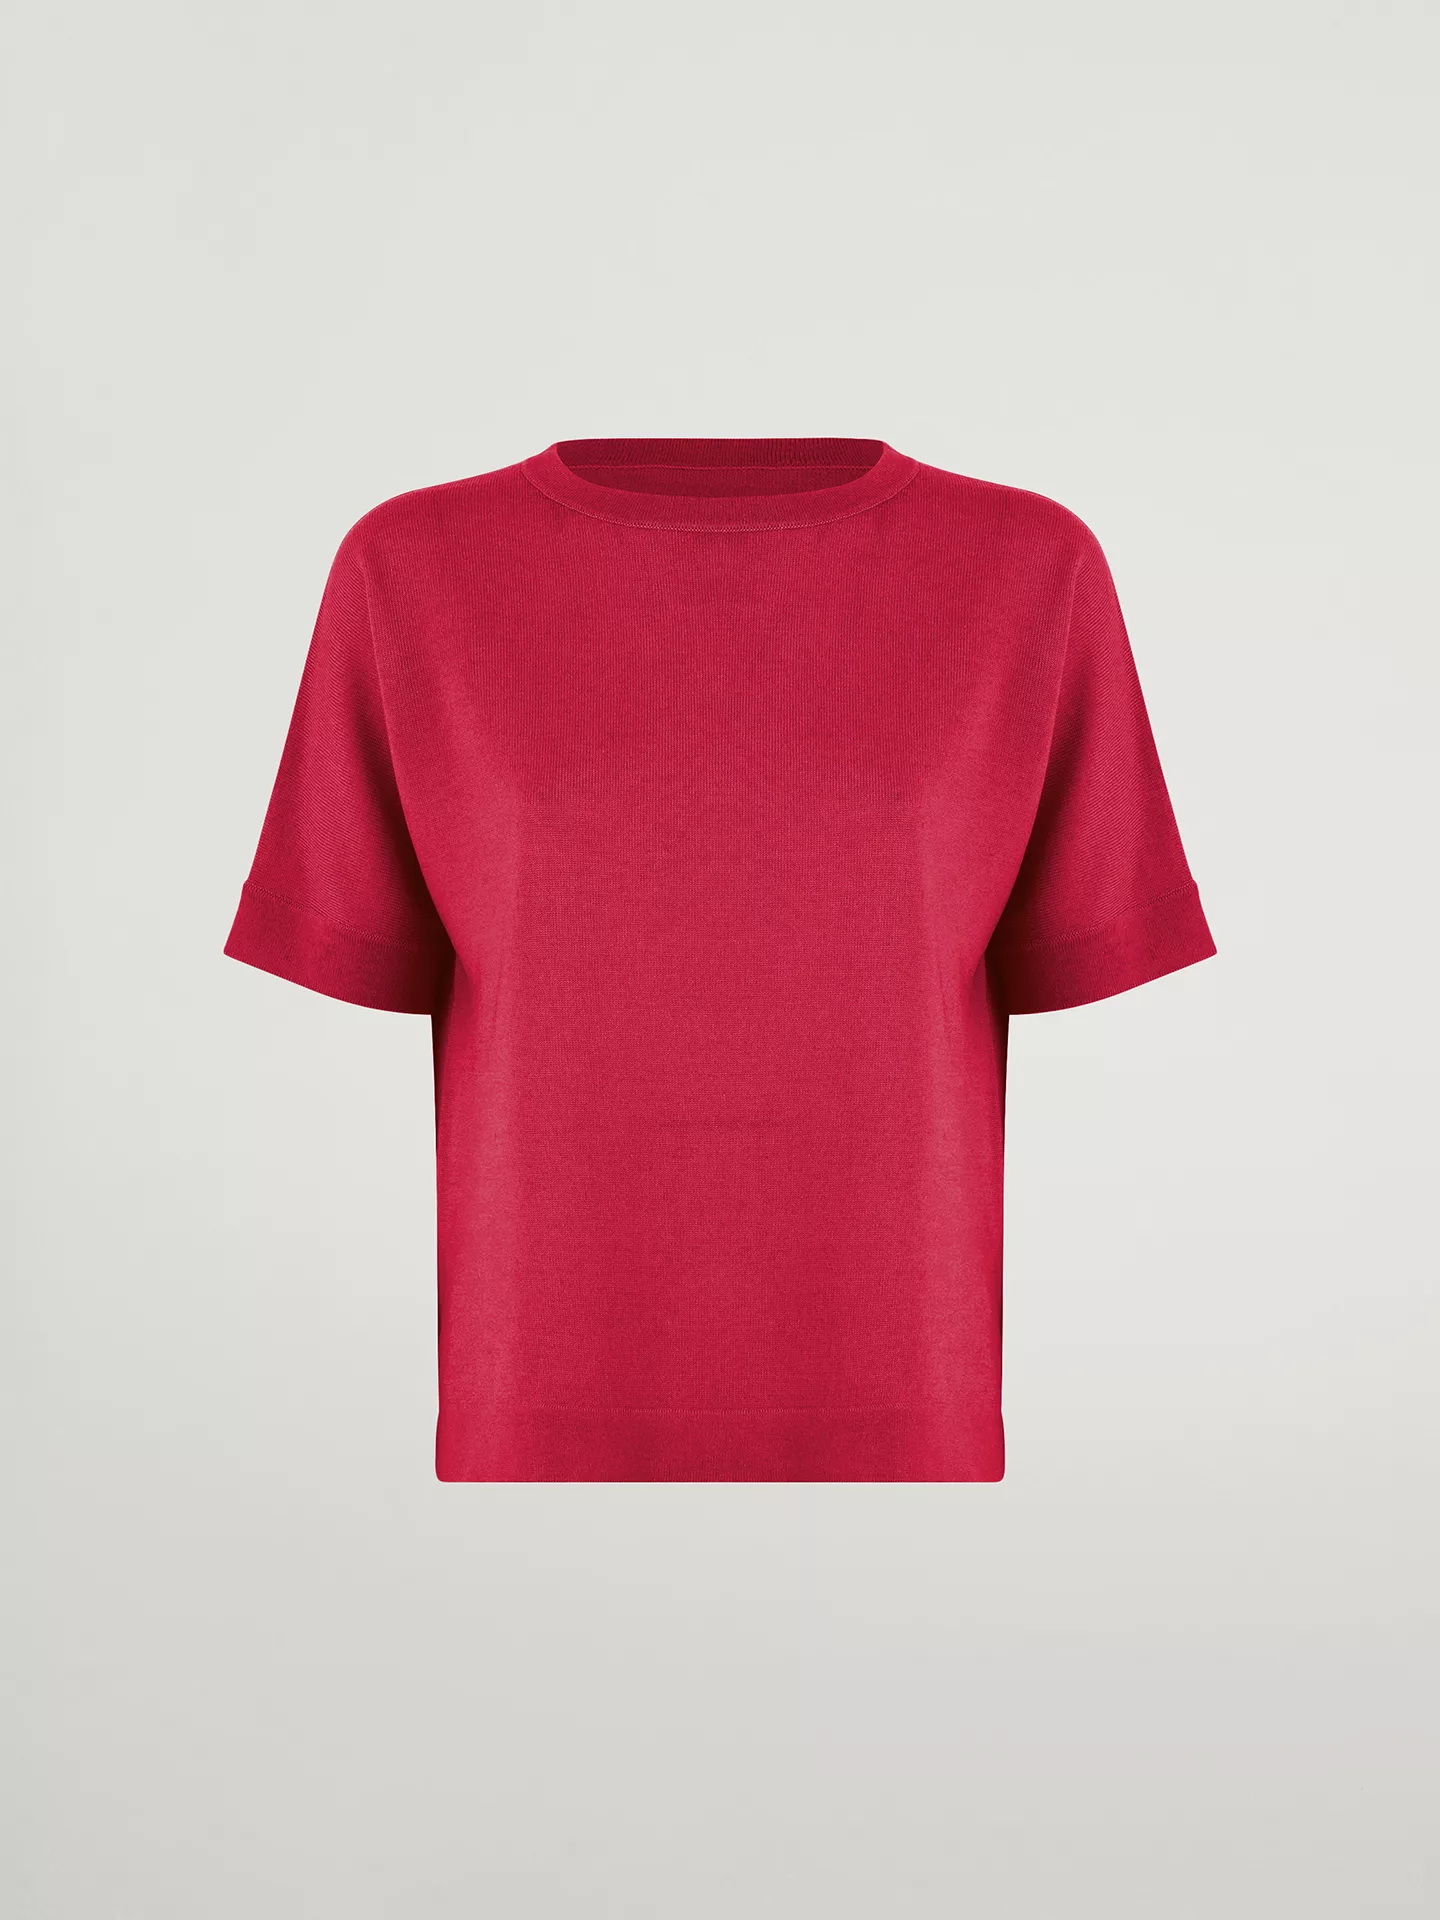 Wolford - Merino Blend Top Short Sleeves, Frau, lipstick red, Größe: S günstig online kaufen